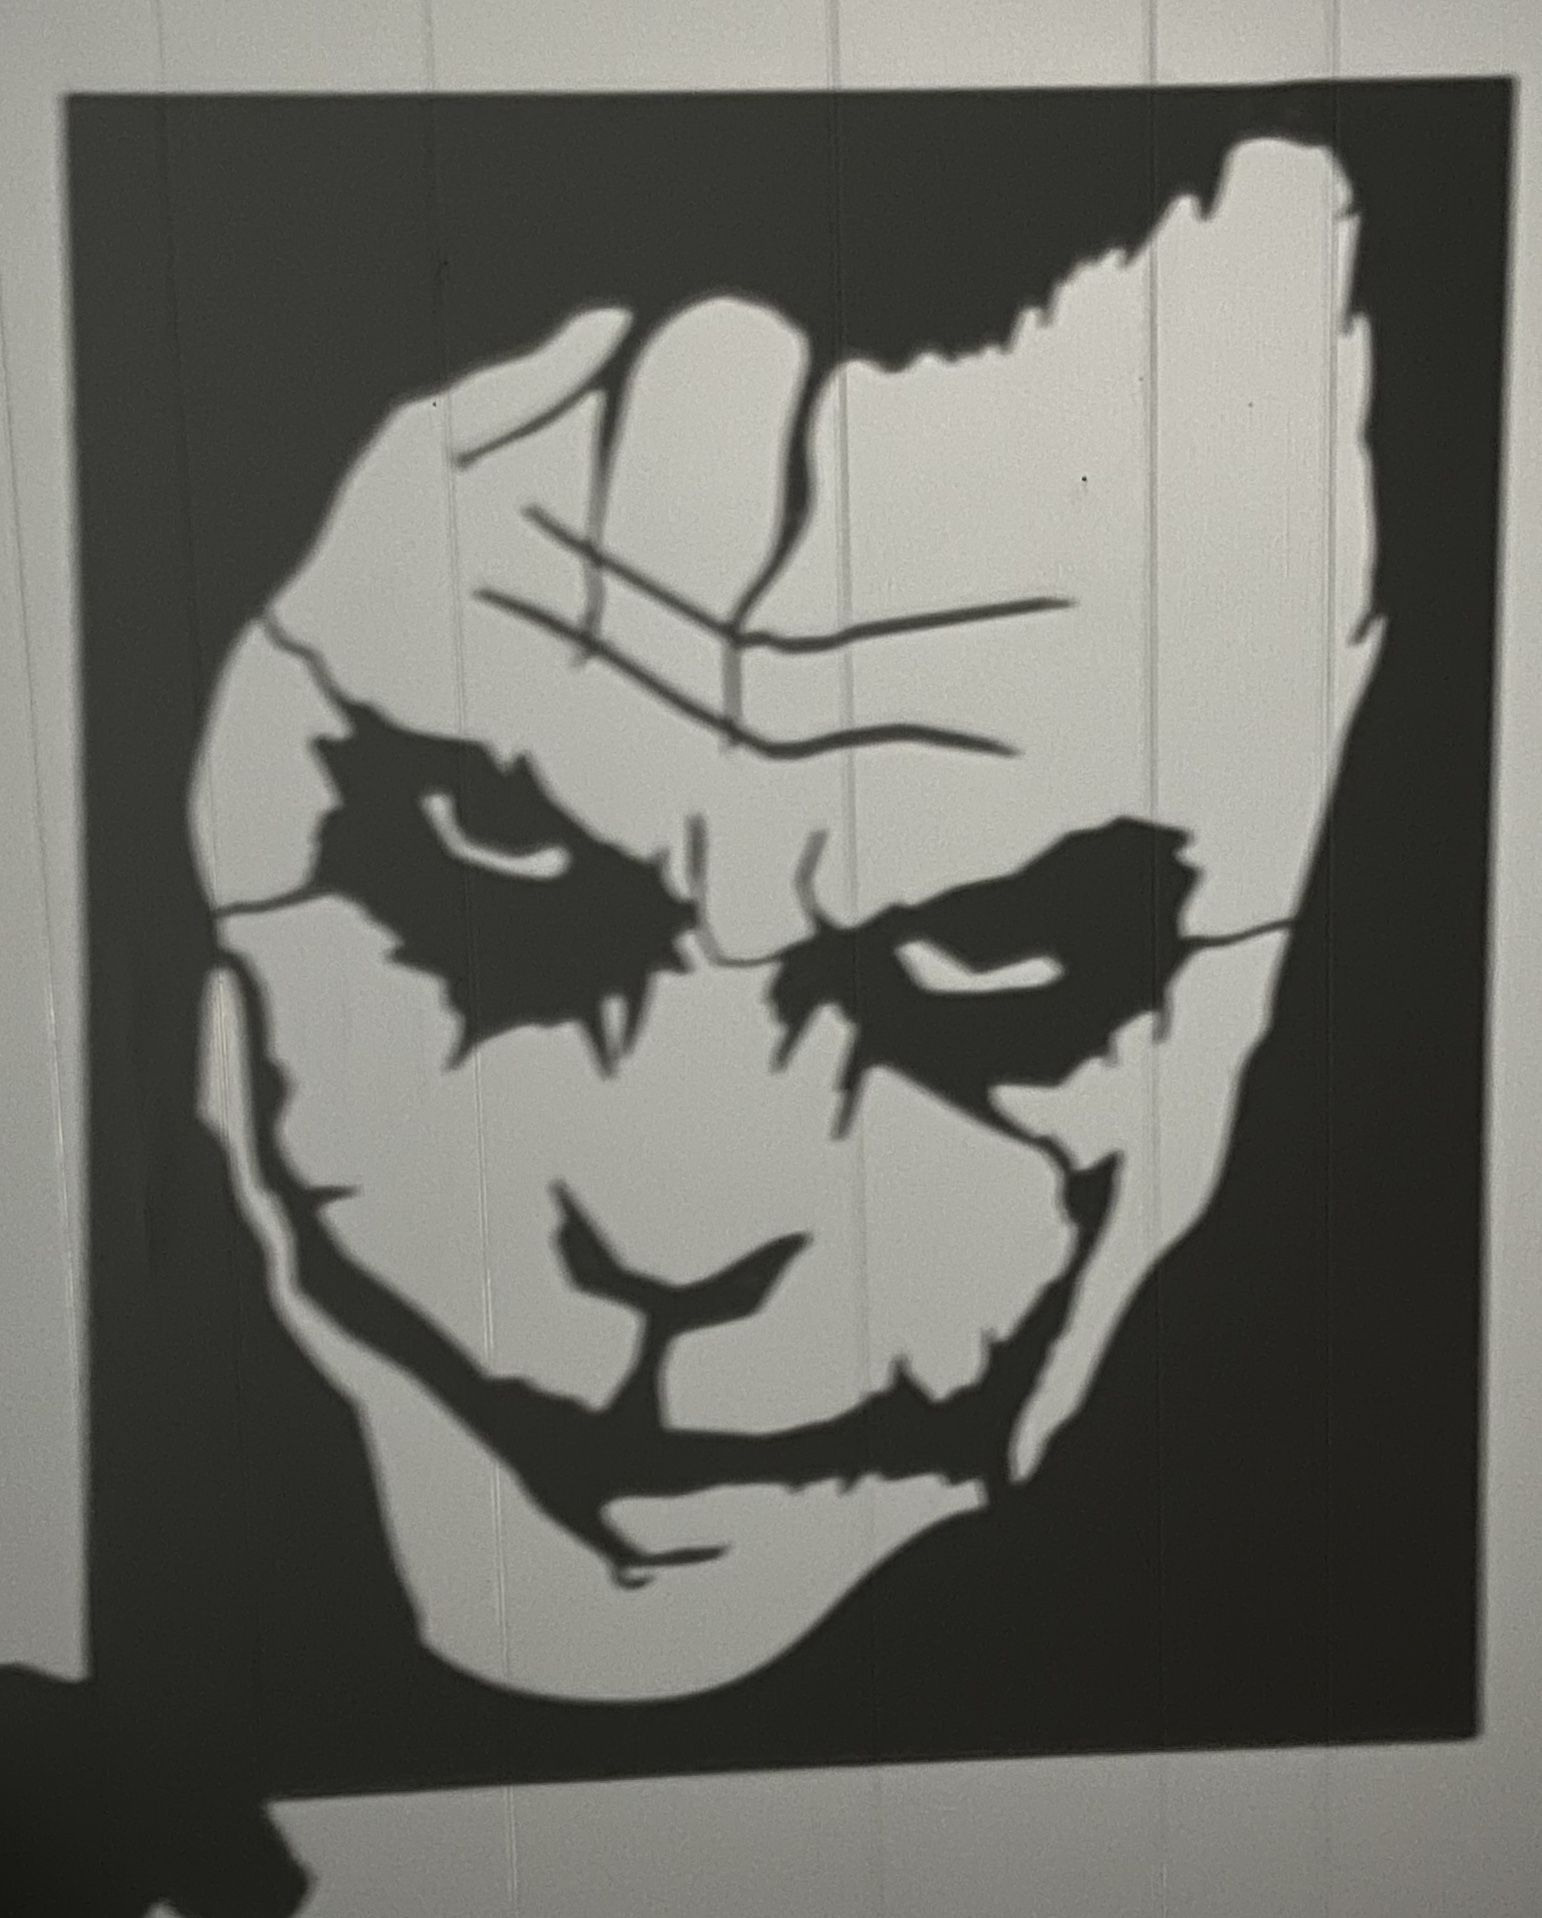 All NEW Heath Ledger “The Joker” Wall Art In Black Home Decor